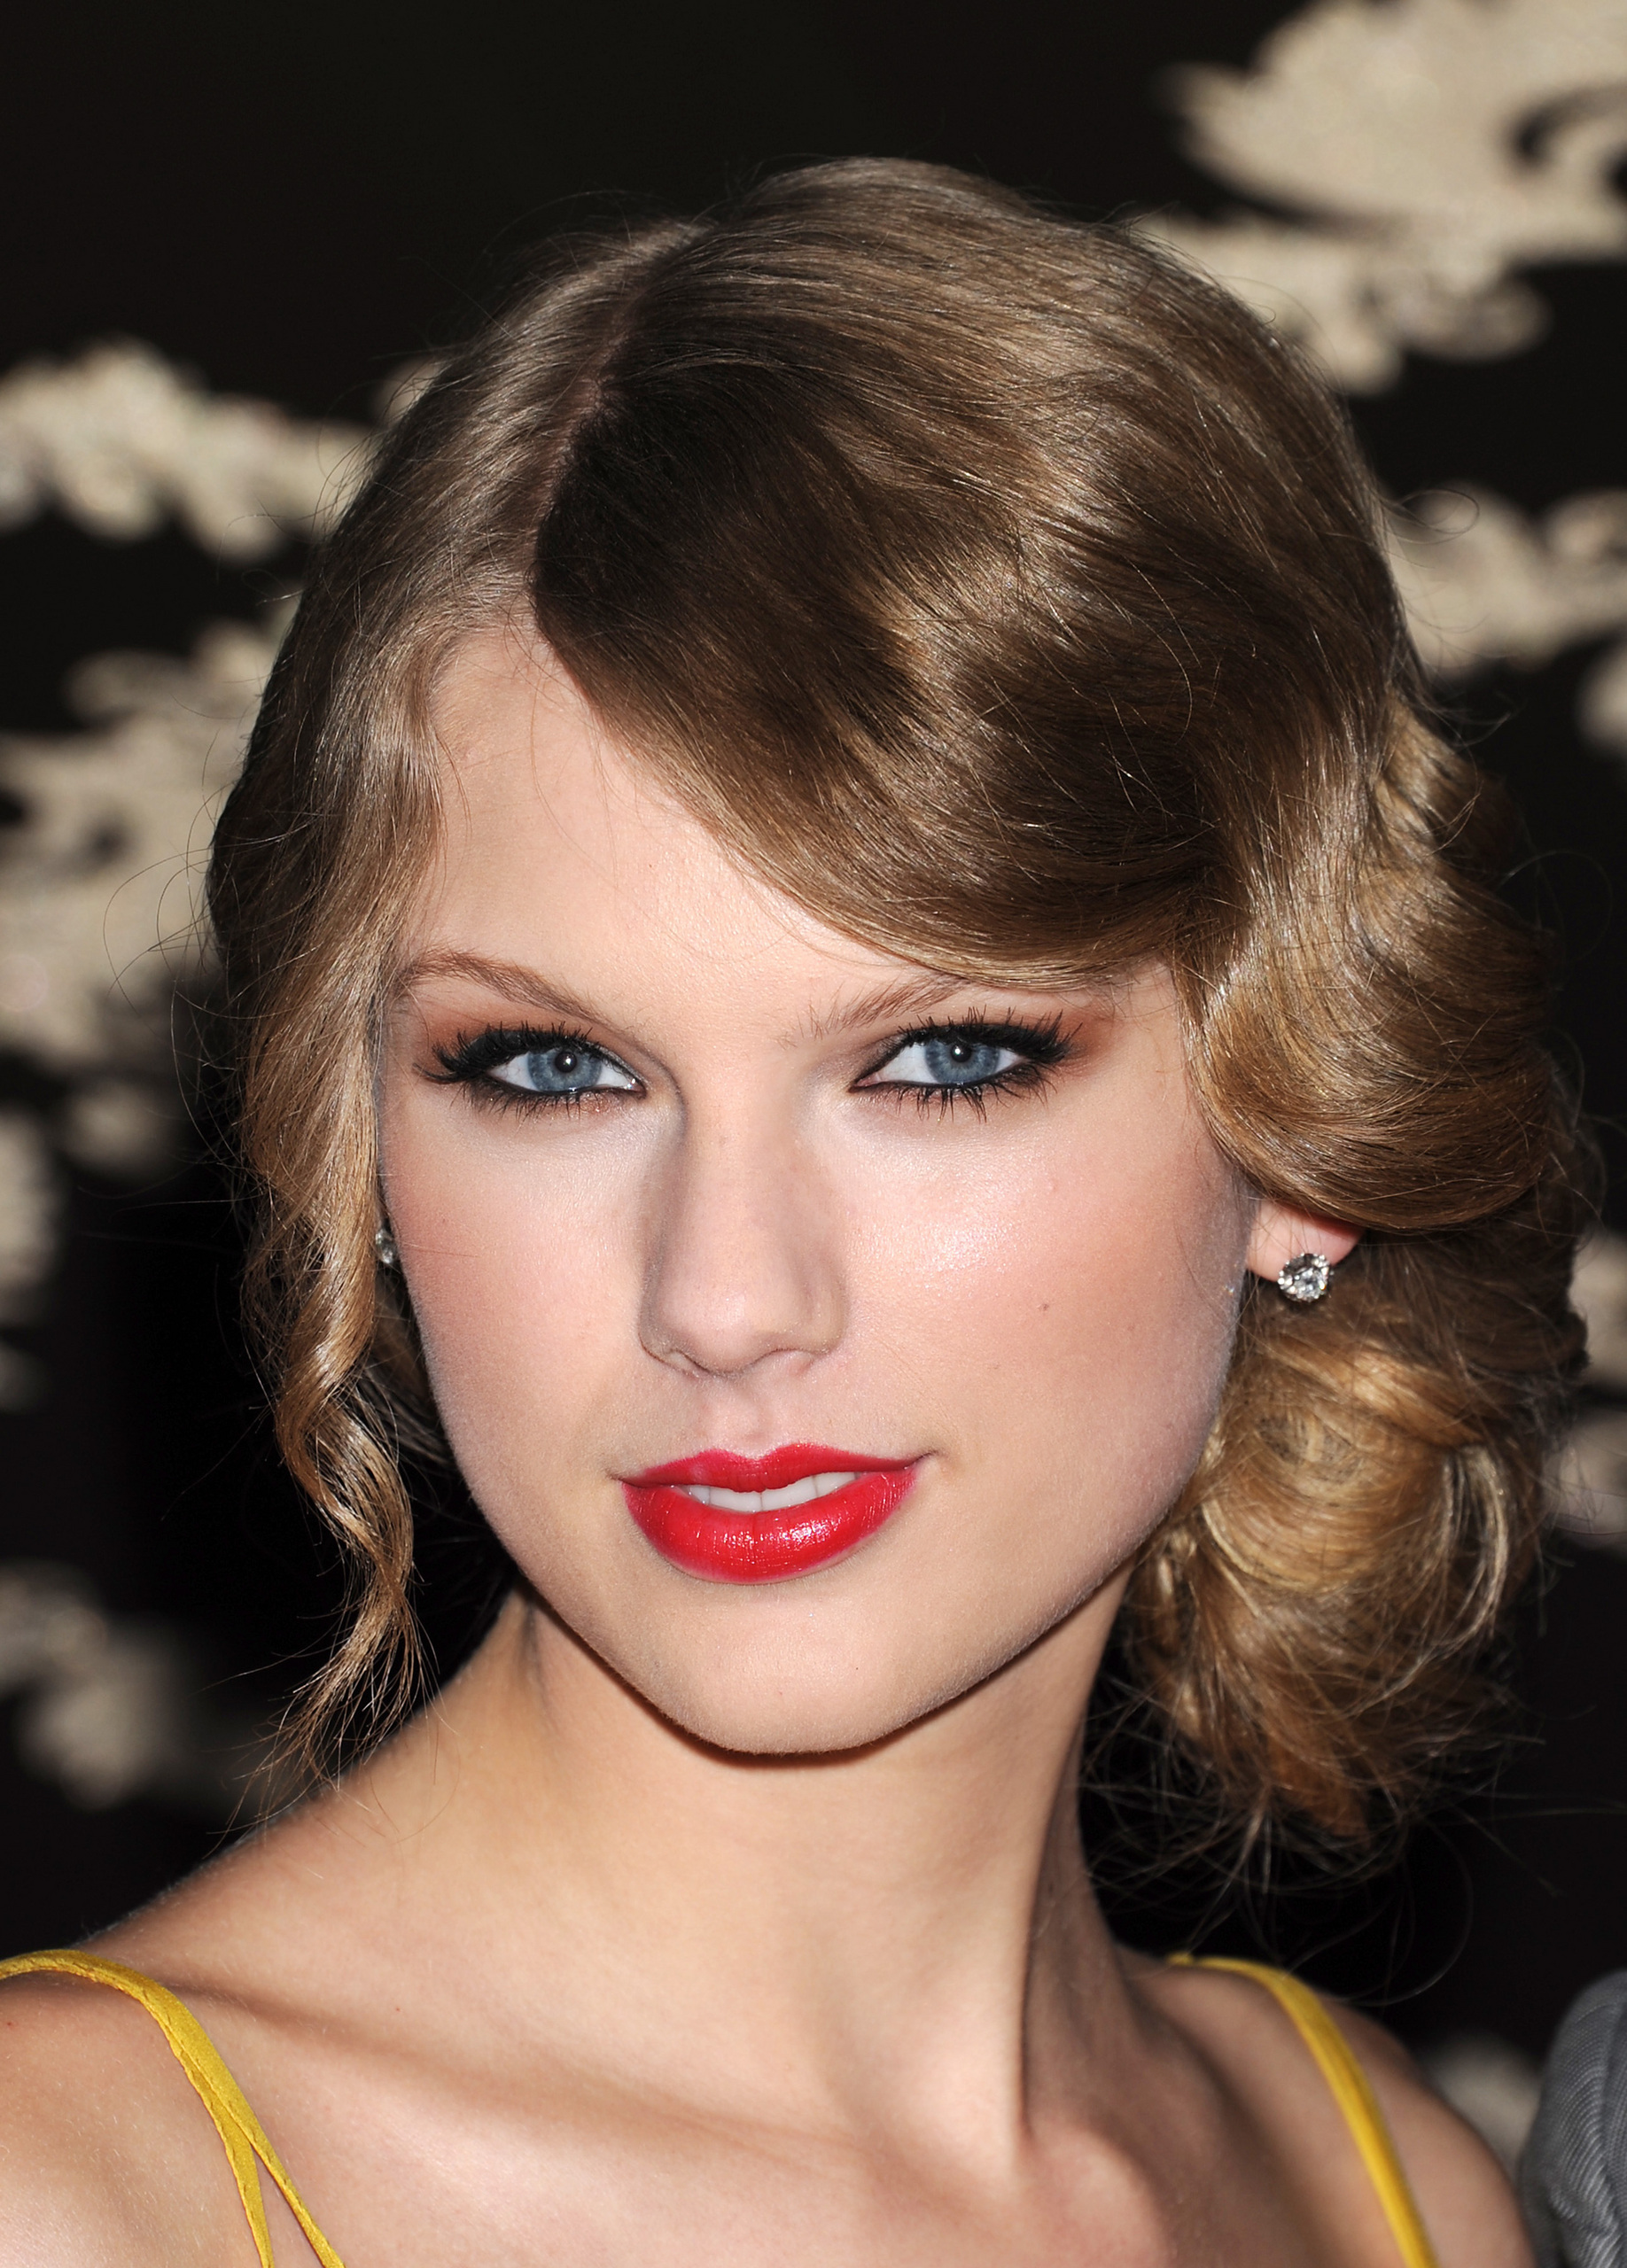 Taylor Swift - Taylor Swift Photo (15809391) - Fanpop